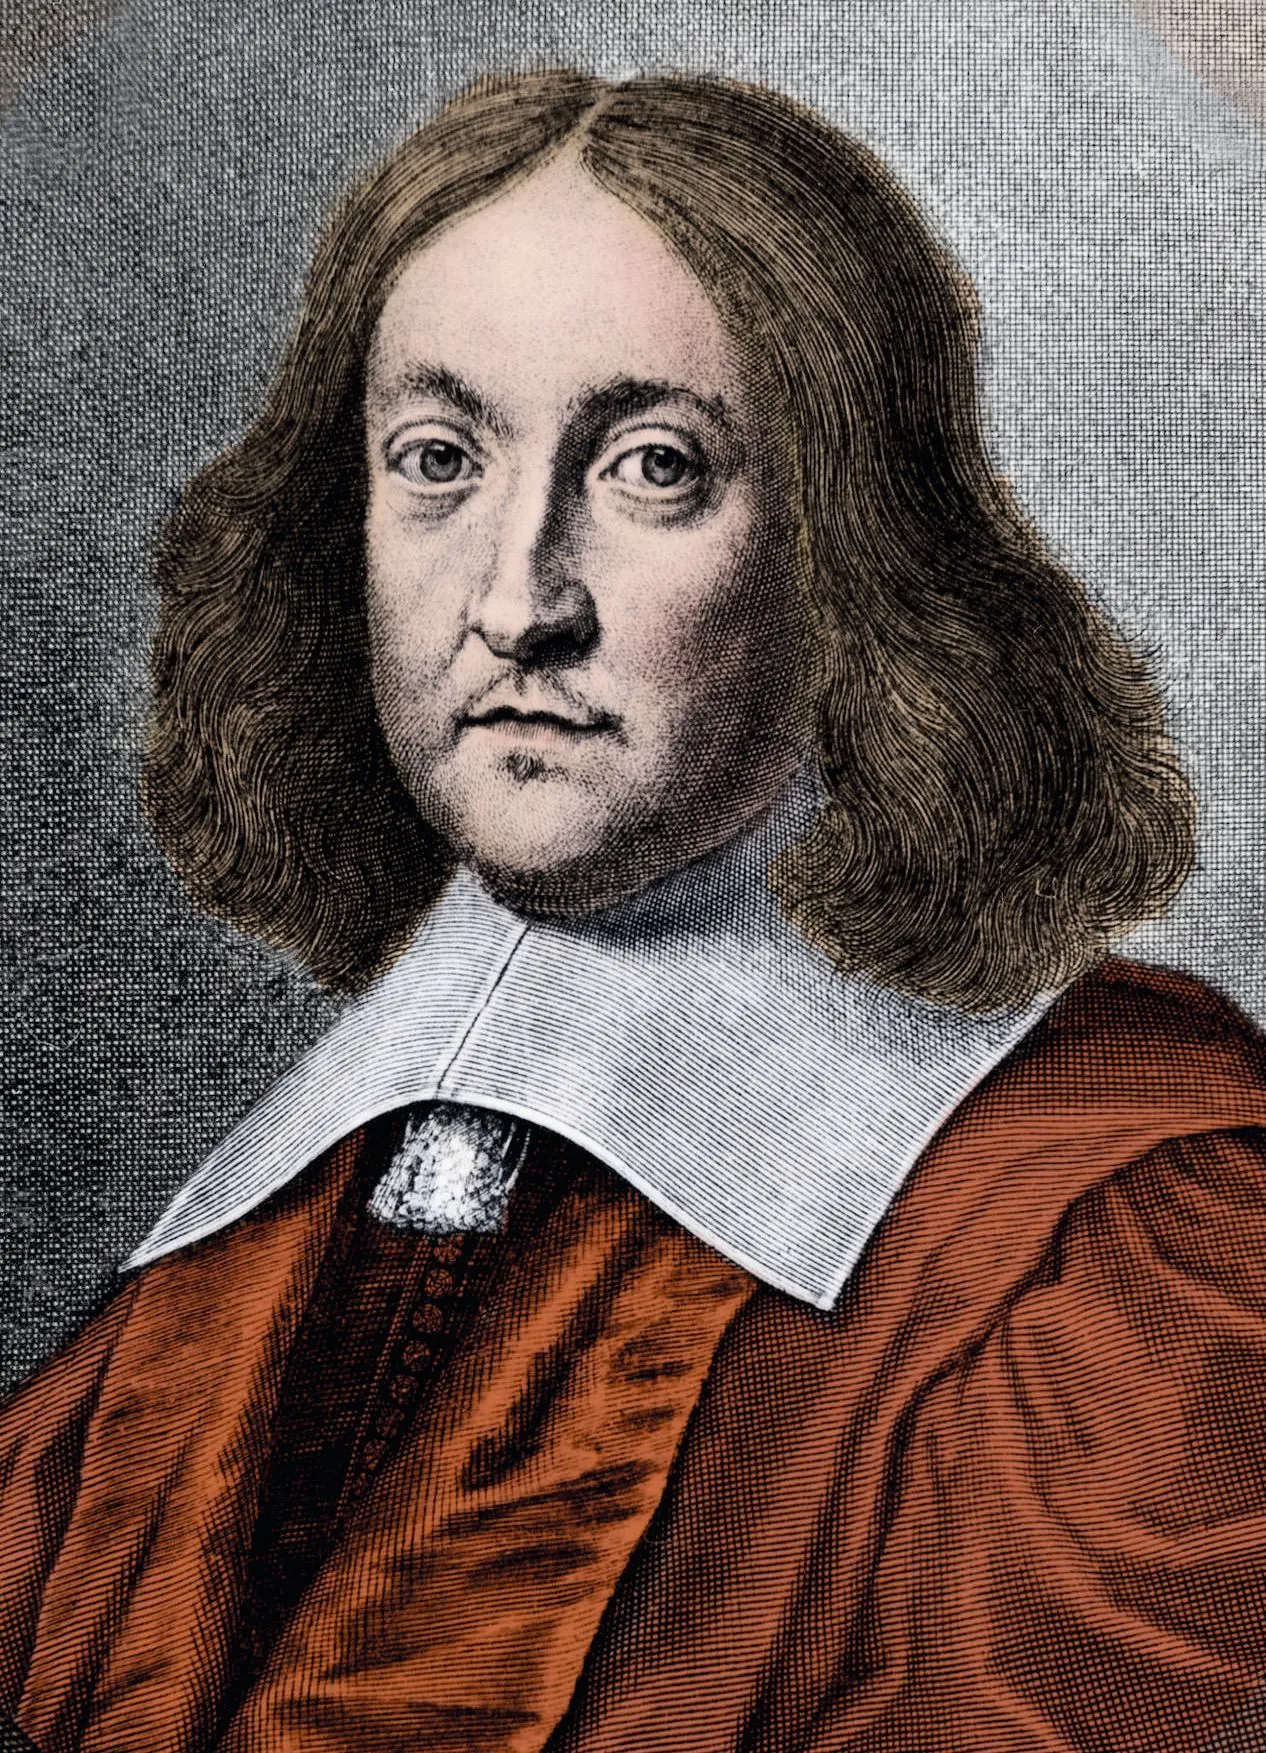 Pierre de Fermat